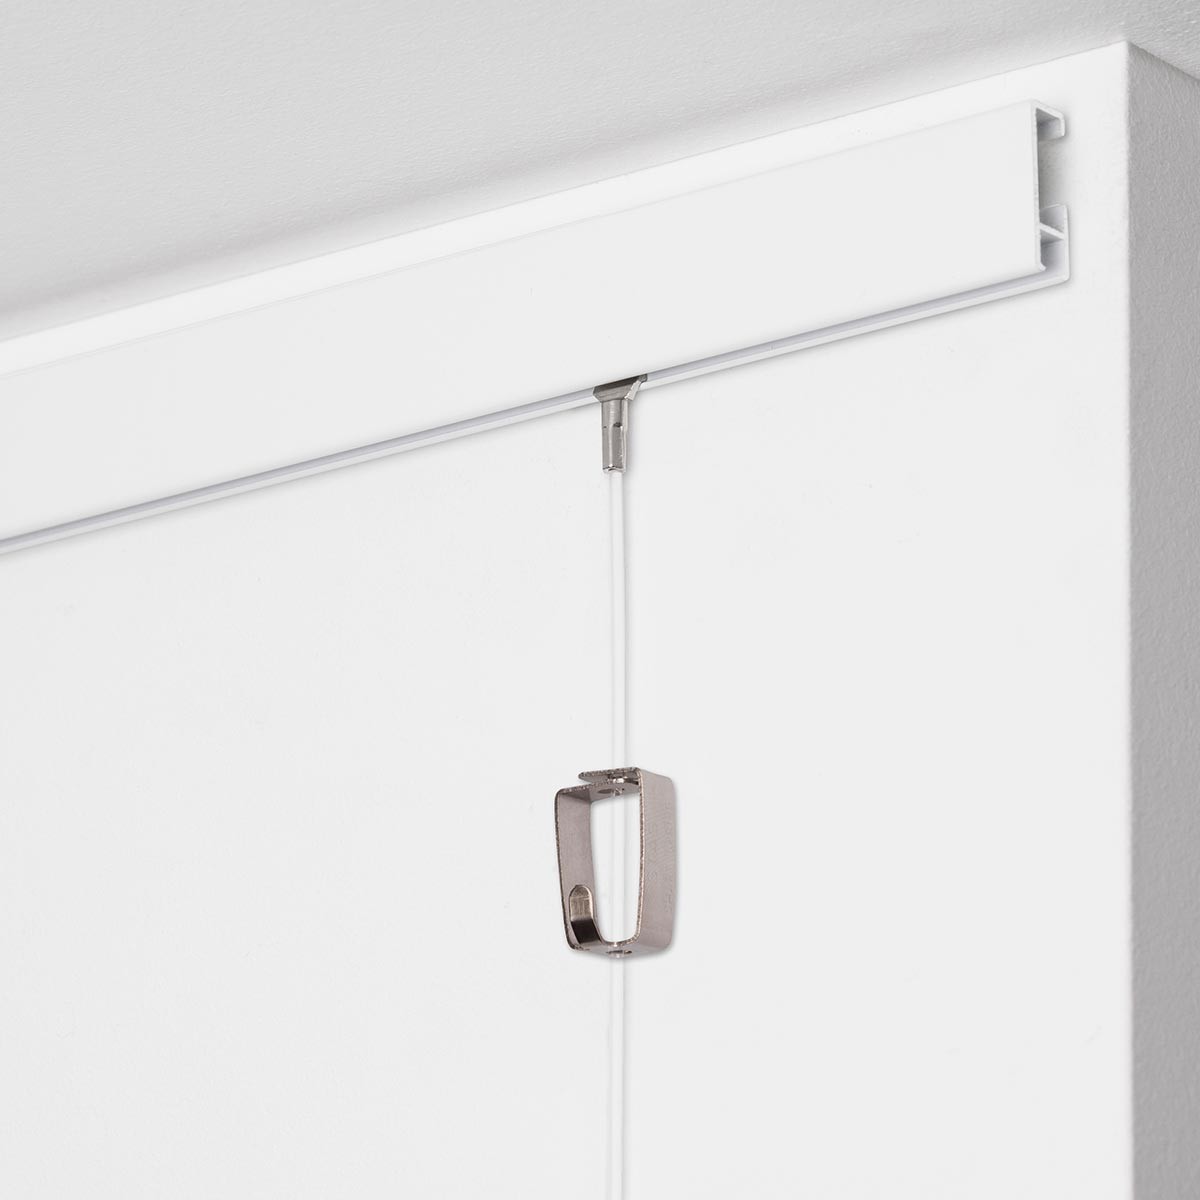 2 METER 6 Feet 6 Inches Blanco clip-rail galería sistema para colgar cuadros con ganchos montado en la pared Stas cliprail negro blanco plata nogal madera incluido fijaciones 